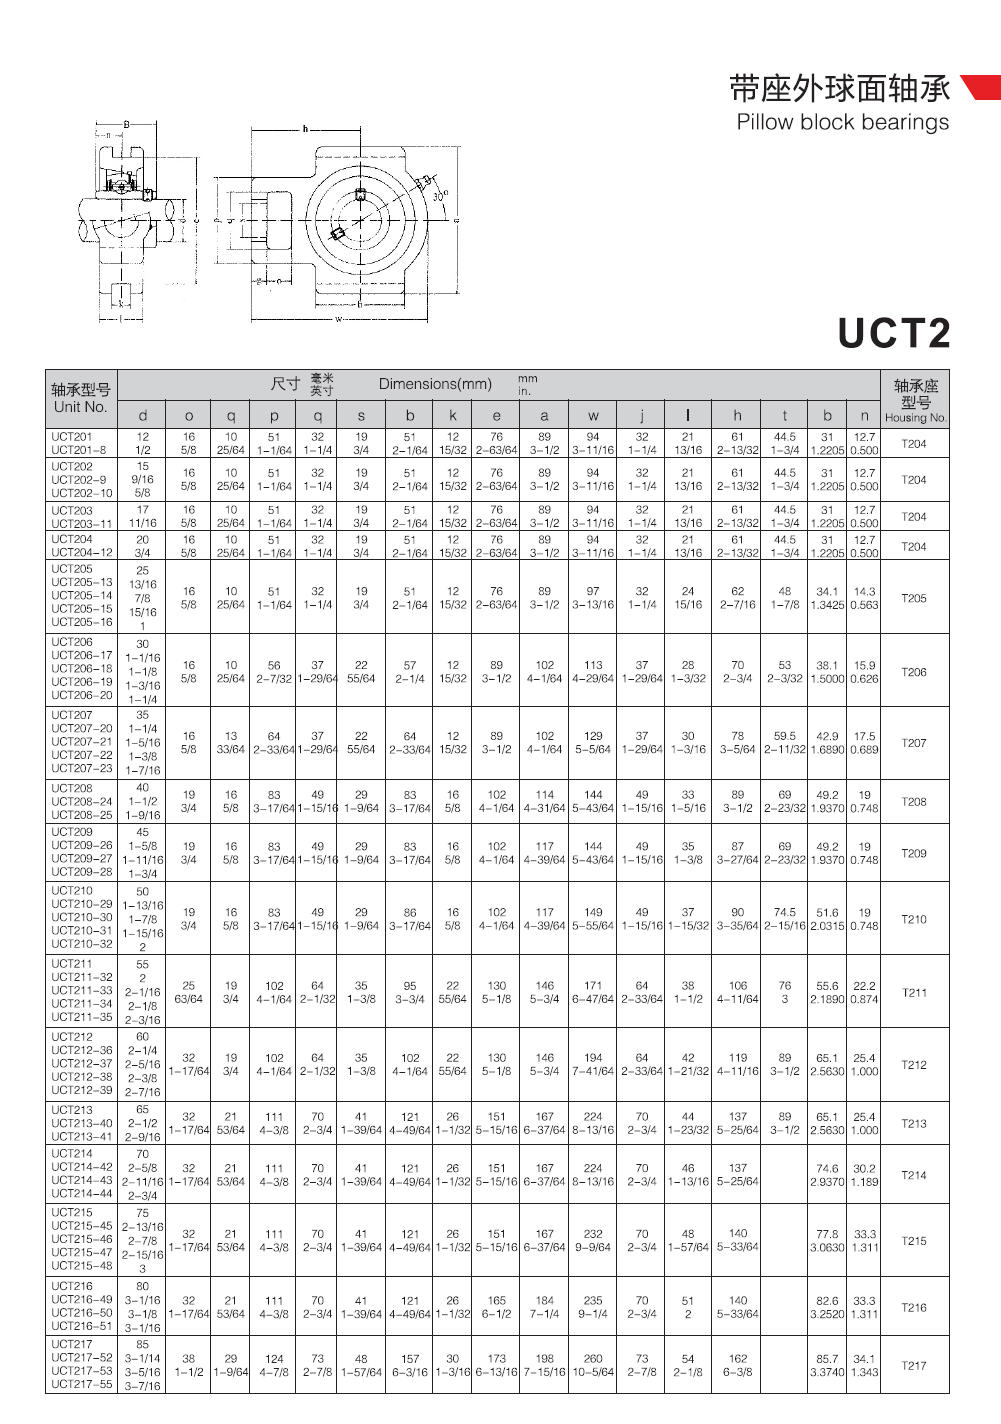 UCT201	 | 
UCT201-8	 | 
UCT202	 | 
UCT202-9	 | 
UCT202-10	 | 
UCT203	 | 
UCT203-11	 | 
UCT204	 | 
UCT204-12	 | 
UCT205	 | 
UCT205-13	 | 
UCT205-14	 | 
UCT205-15	 | 
UCT205-16	 | 
UCT206	 | 
UCT206-17	 | 
UCT206-18	 | 
UCT206-19	 | 
UCT206-20	 | 
UCT207	 | 
UCT207-20	 | 
UCT207-21	 | 
UCT207-22	 | 
UCT207-23	 | 
UCT208	 | 
UCT208-24	 | 
UCT208-25	 | 
UCT209	 | 
UCT209-26	 | 
UCT209-27	 | 
UCT209-28	 | 
UCT210	 | 
UCT210-29	 | 
UCT210-30	 | 
UCT210-31	 | 
UCT210-32	 | 
UCT211	 | 
UCT211-32	 | 
UCT211-33	 | 
UCT211-34	 | 
UCT211-35	 | 
UCT212	 | 
UCT212-36	 | 
UCT212-37	 | 
UCT212-38	 | 
UCT212-39	 | 
UCT213	 | 
UCT213-40	 | 
UCT213-41	 | 
UCT214	 | 
UCT214-42	 | 
UCT214-43	 | 
UCT214-44	 | 
UCT215	 | 
UCT215-45	 | 
UCT215-46	 | 
UCT215-47	 | 
UCT215-48	 | 
UCT216	 | 
UCT216-49	 | 
UCT216-50	 | 
UCT216-51	 | 
UCT217	 | 
UCT217-52	 | 
UCT217-53	 | 
UCT217-55	 | 